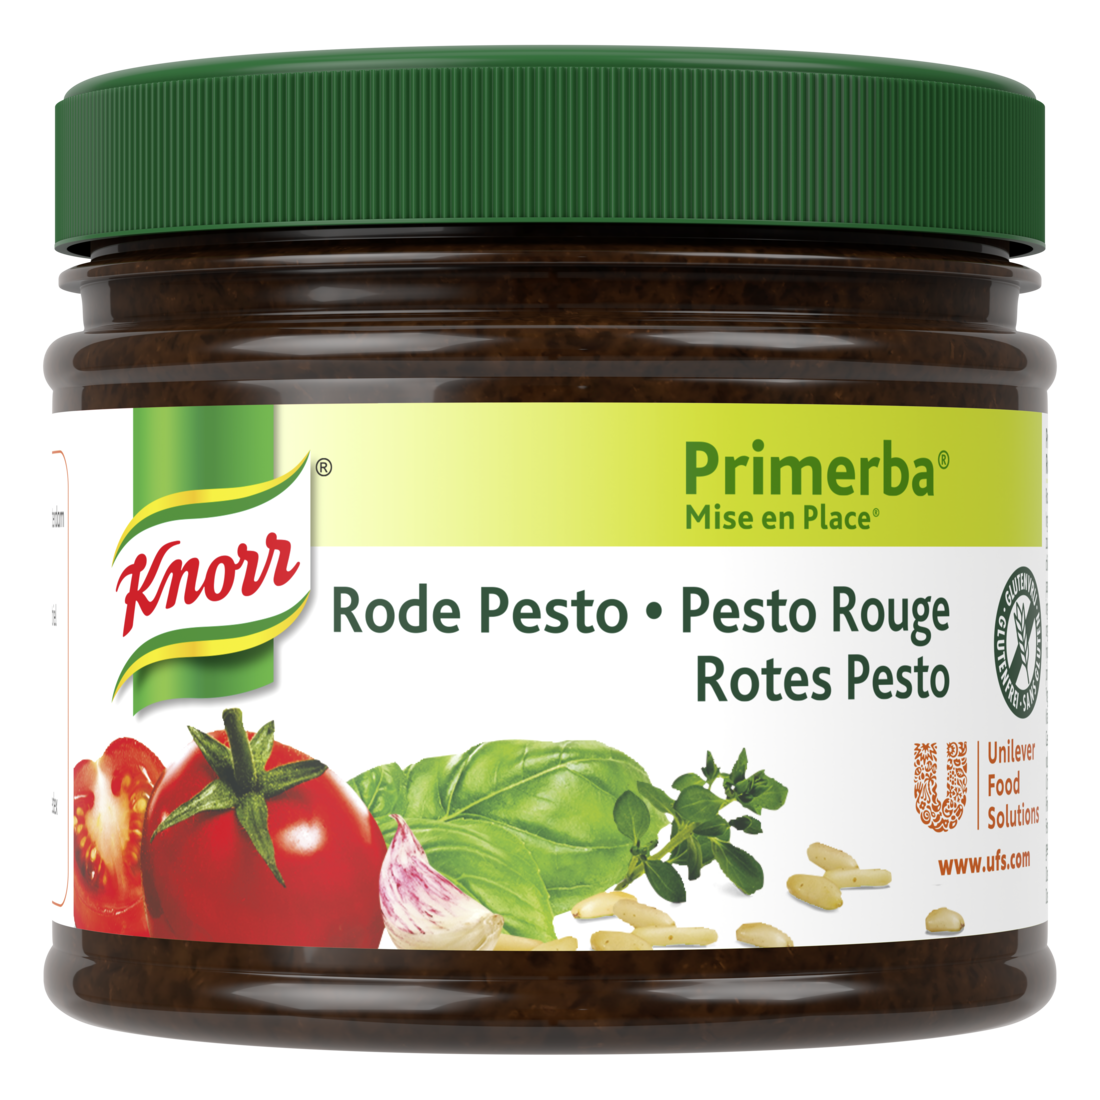 Knorr Mise en place Pesto Rouge 340g - Knorr Mise en place Primerba personnalise et sublime vos plats.